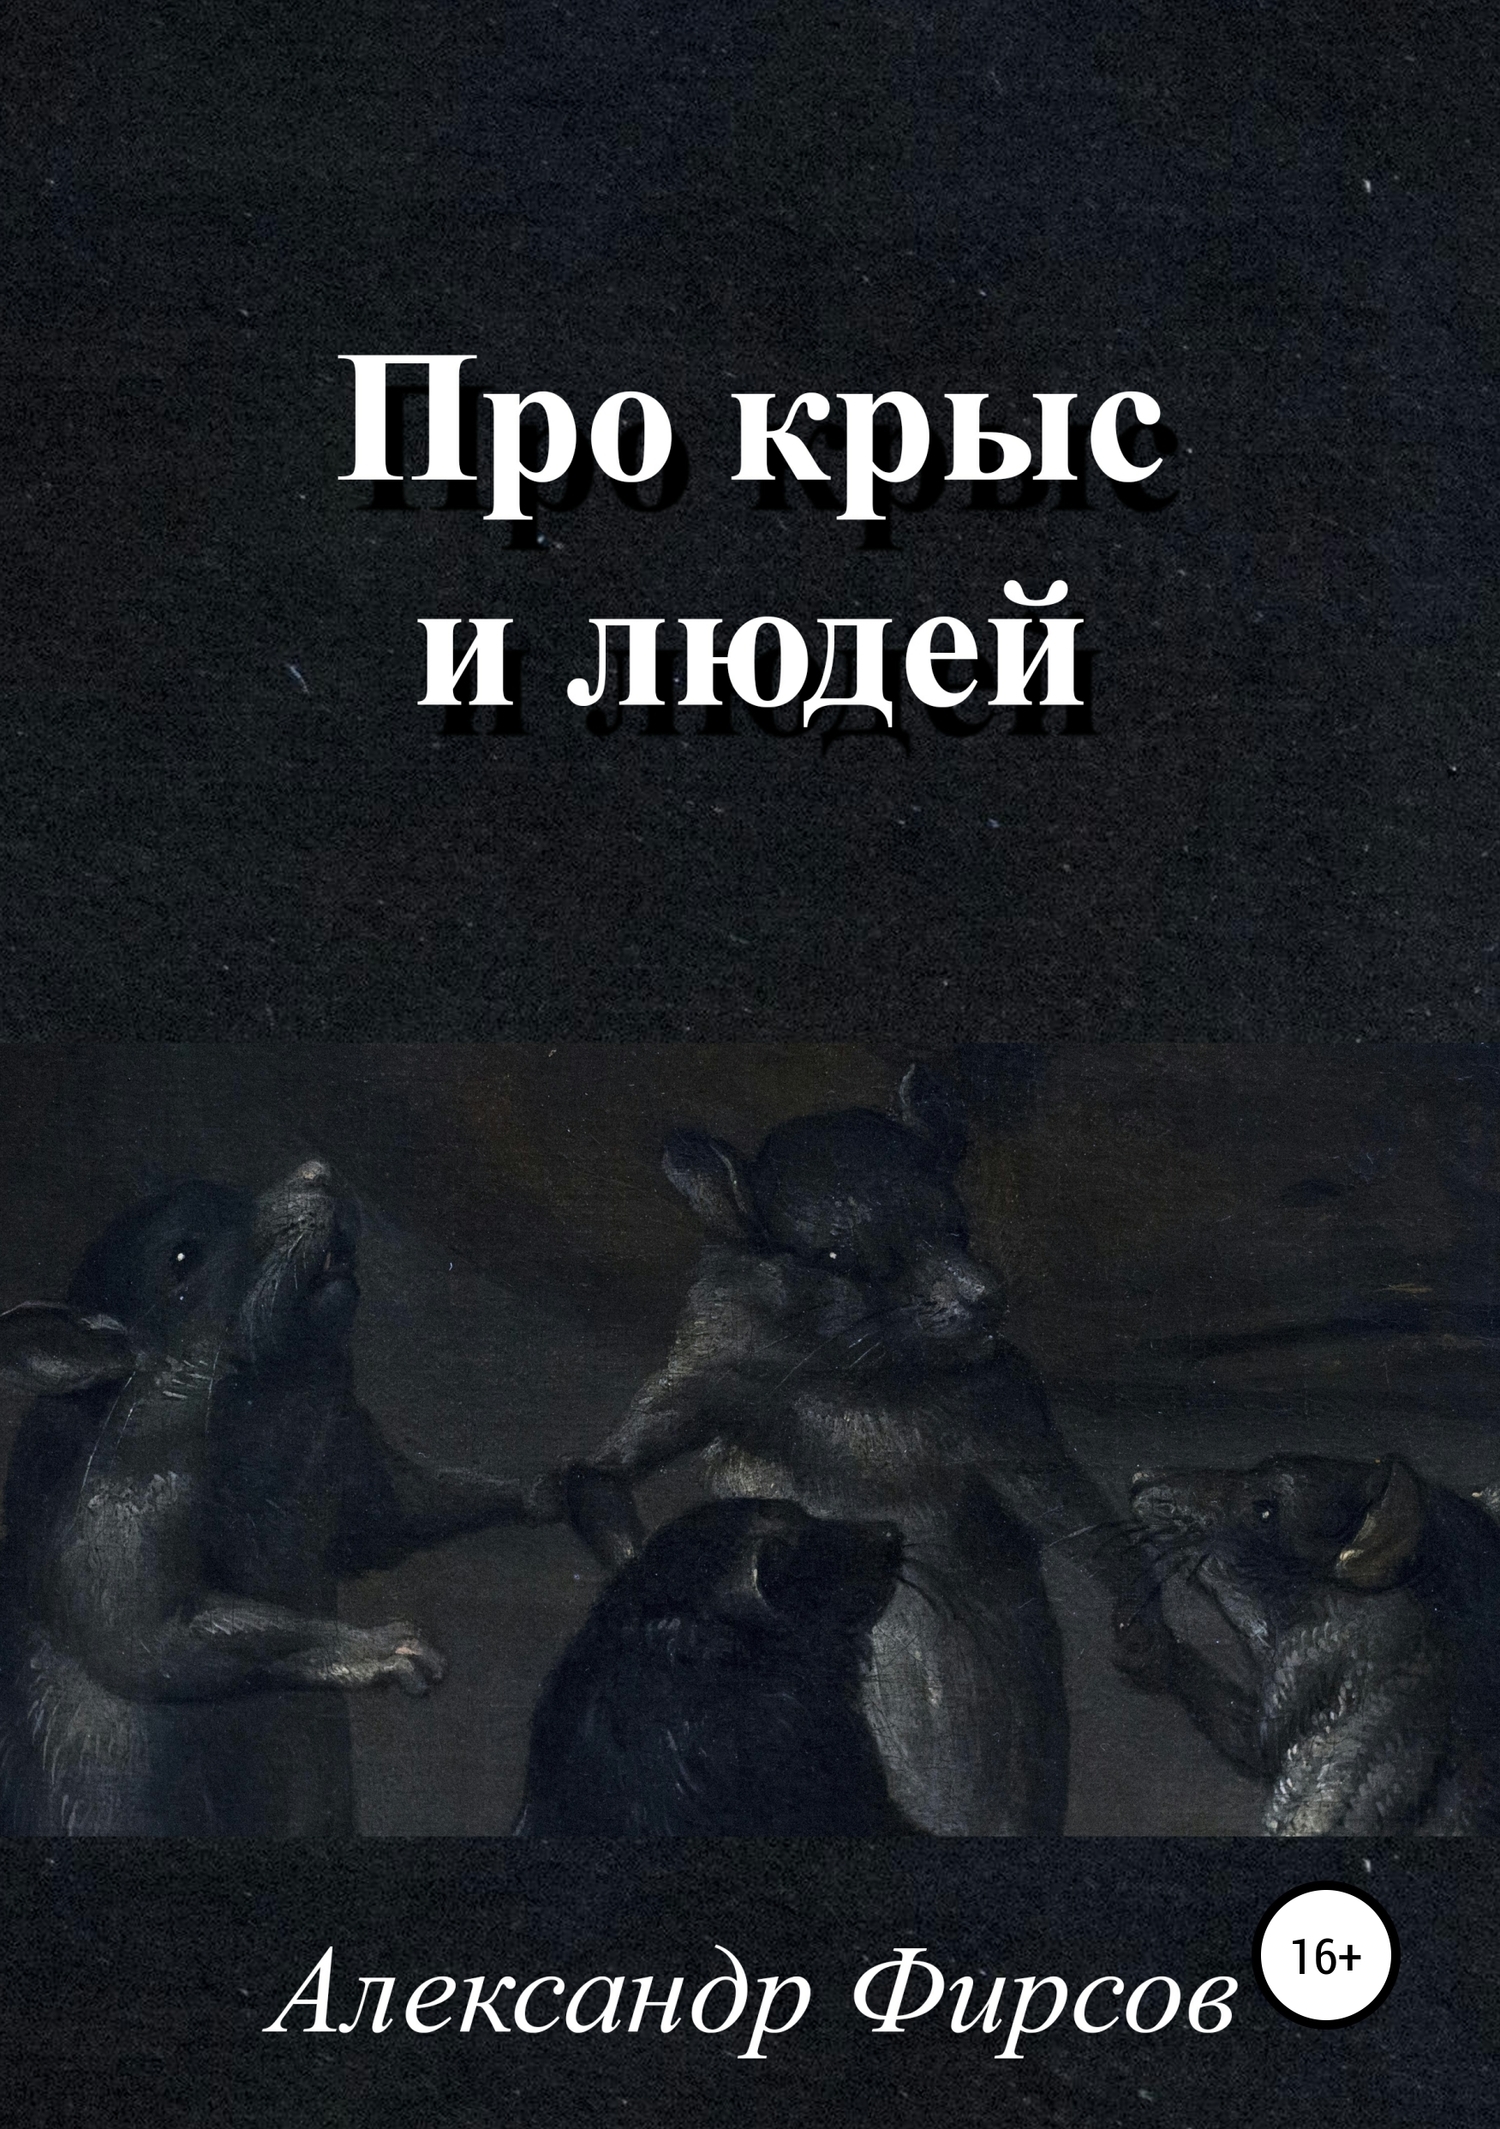 Книга крыса люди. Высказывания про крысятничество. Статус про крыс. Цитаты про крыс.